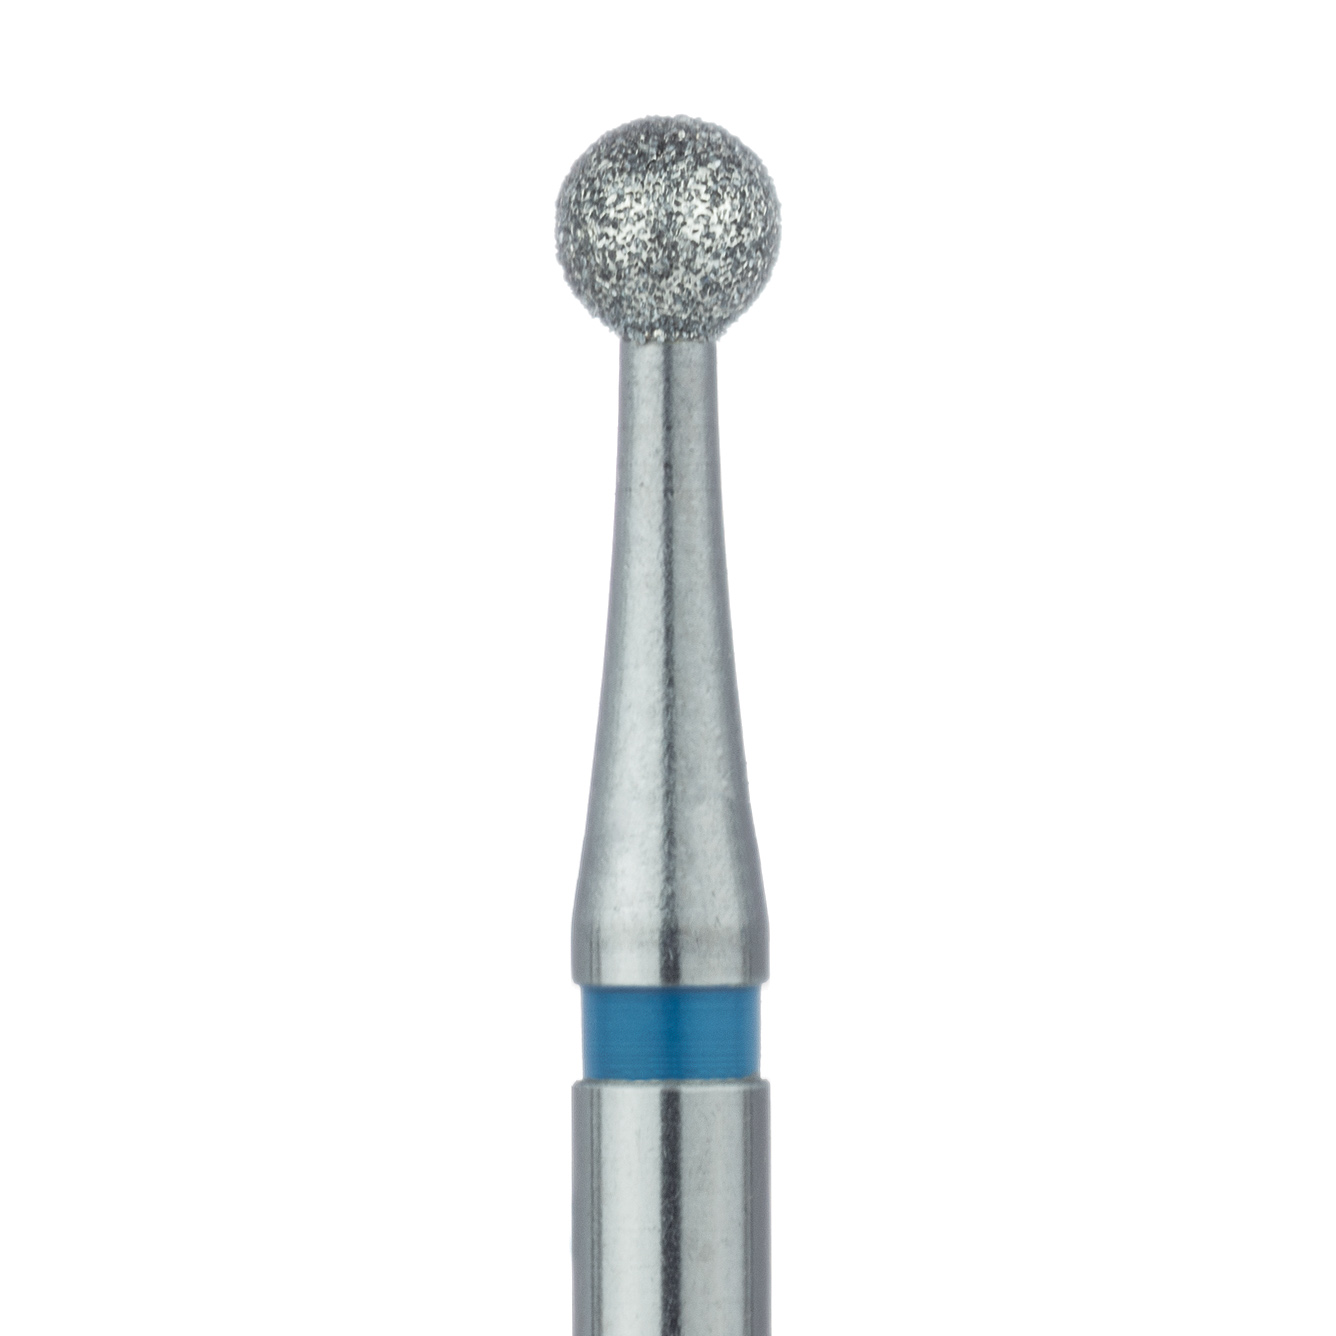 801-027-RA Round Diamond Bur, 2.7mm Ø, Medium, RA